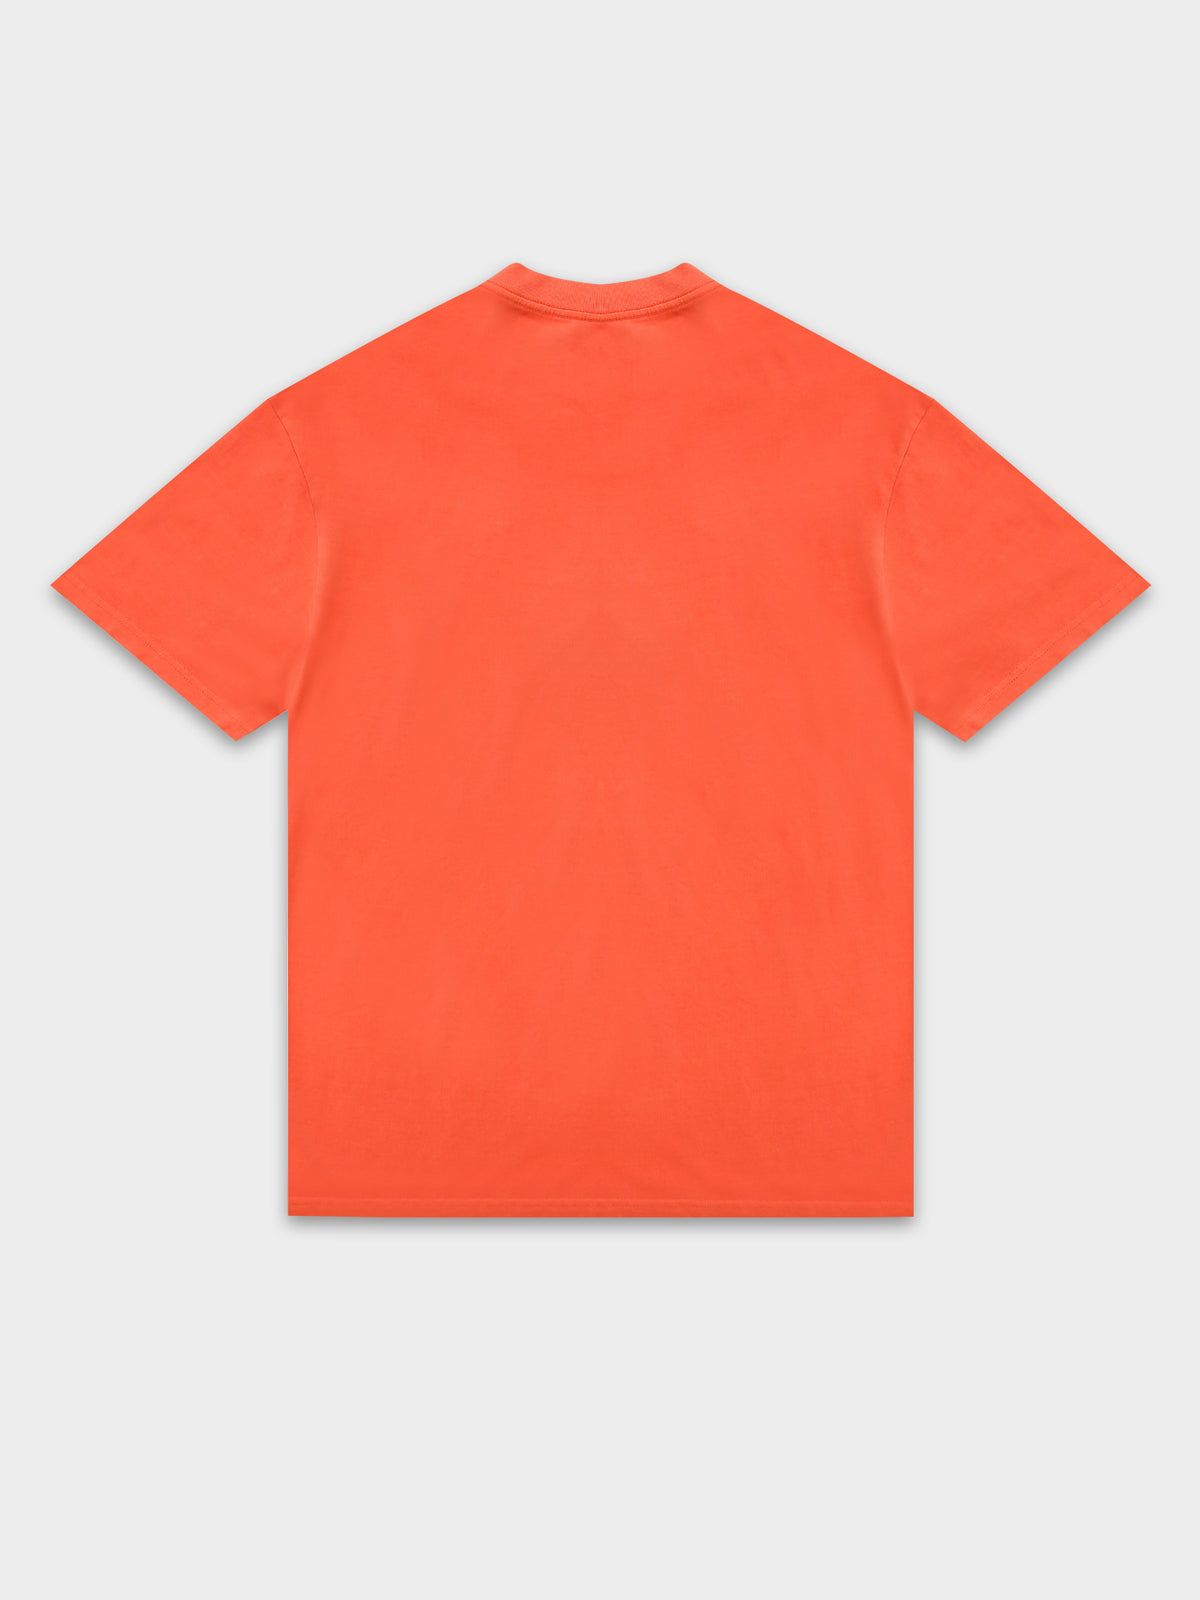 Miami Dolphin T-Shirt in Faded Orange